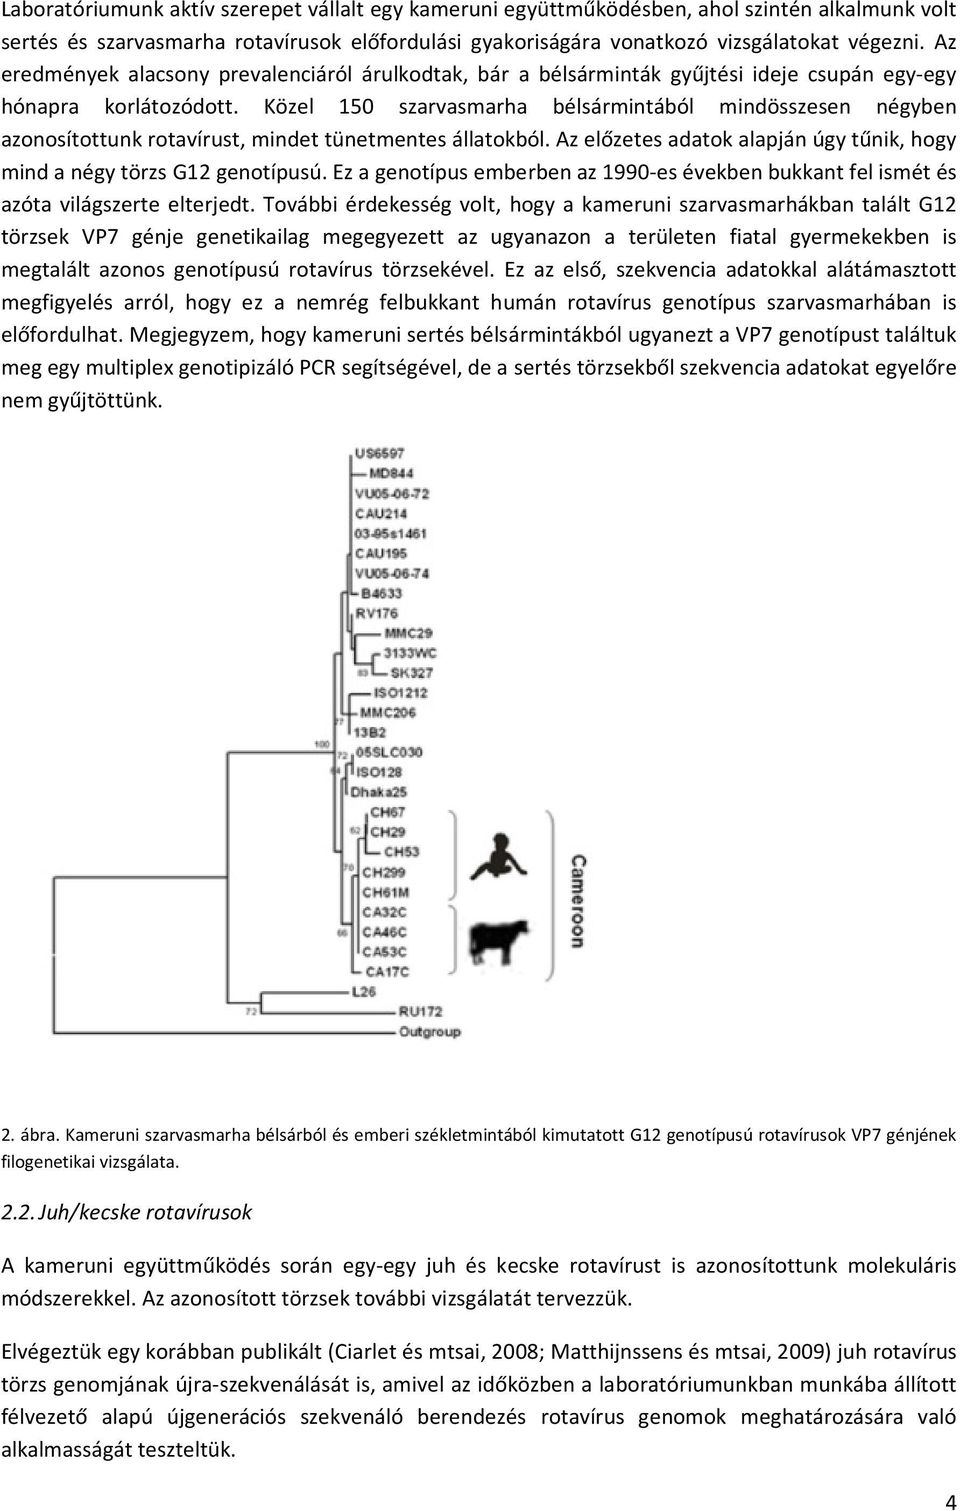 Közel 150 szarvasmarha bélsármintából mindösszesen négyben azonosítottunk rotavírust, mindet tünetmentes állatokból. Az előzetes adatok alapján úgy tűnik, hogy mind a négy törzs G12 genotípusú.